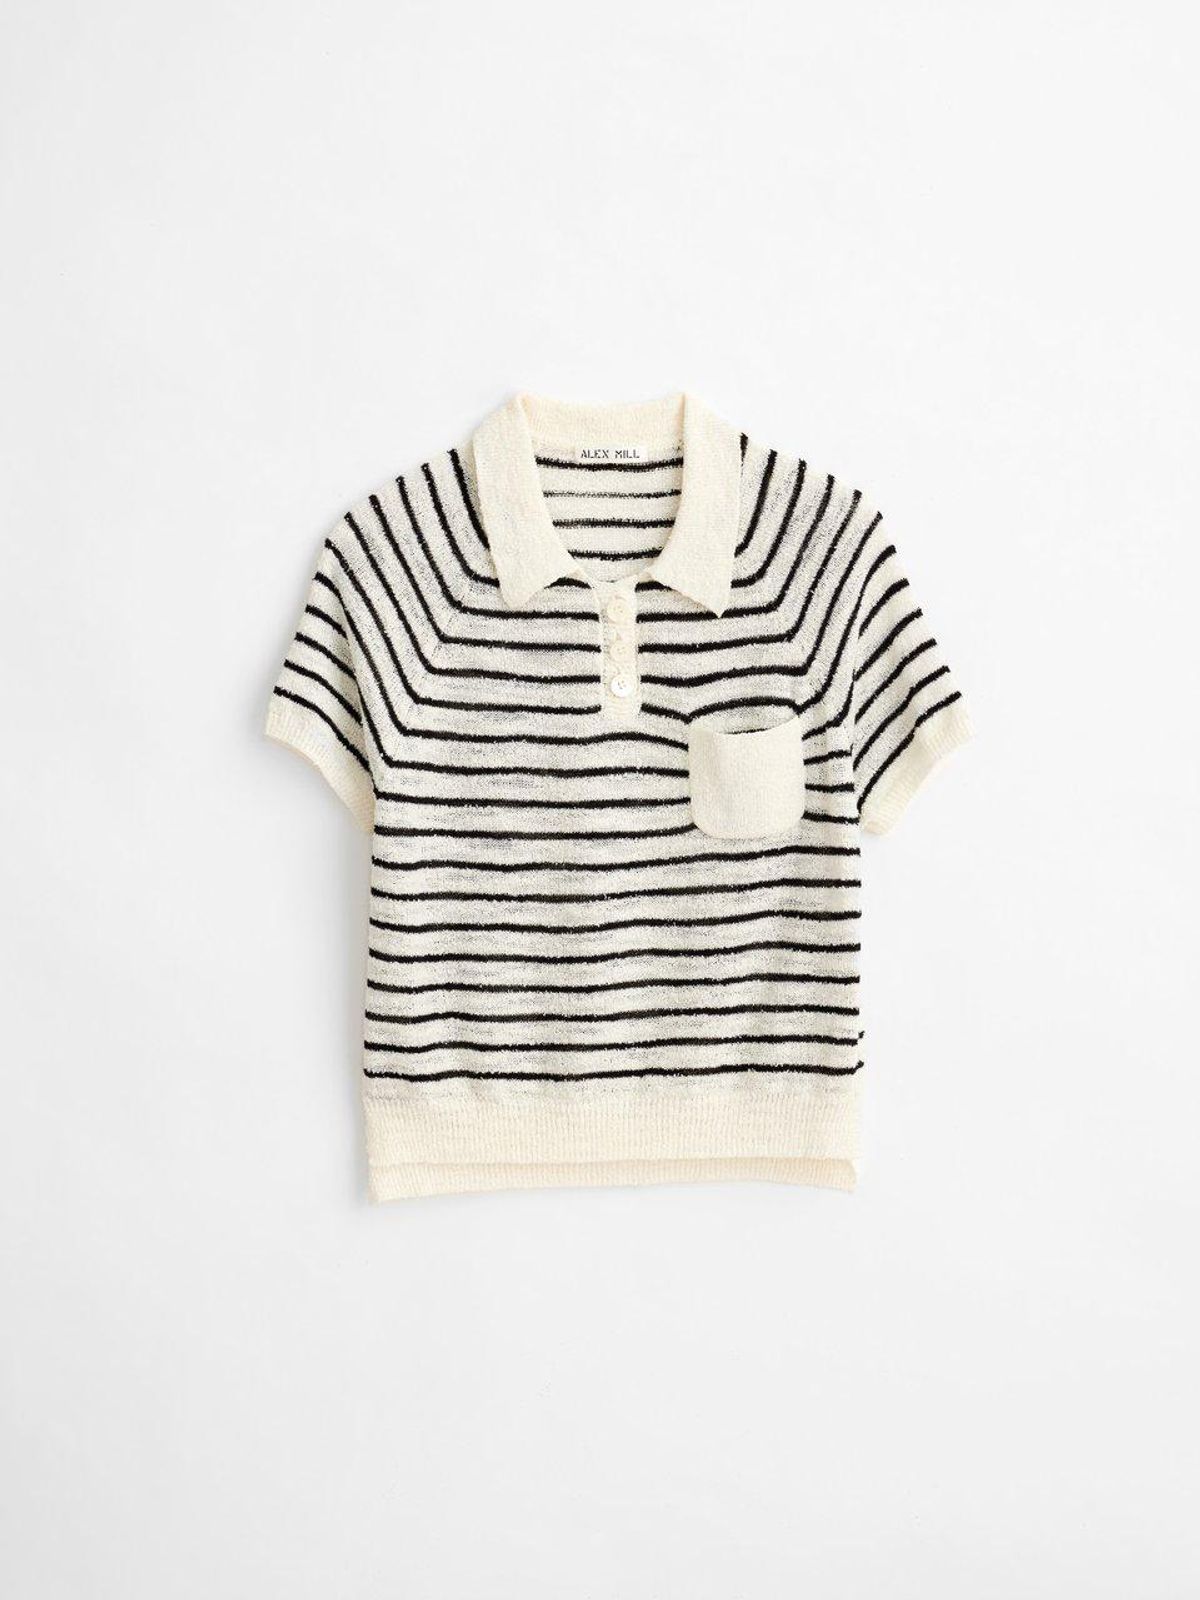 alex mill clifford stripe sweater